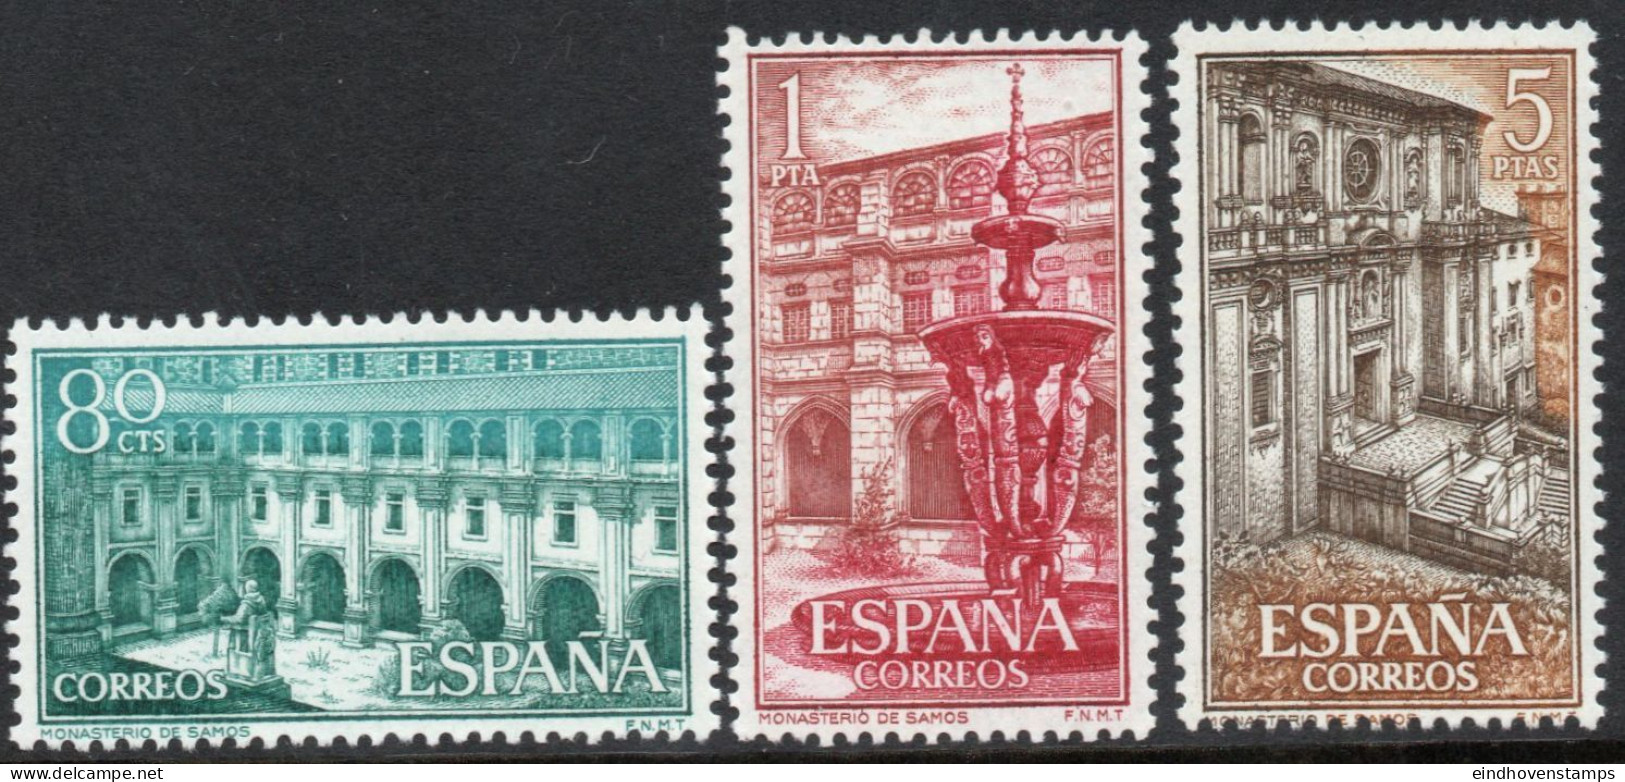 Spain 1960 Cloister Samos 3 Values MNH - Abbayes & Monastères